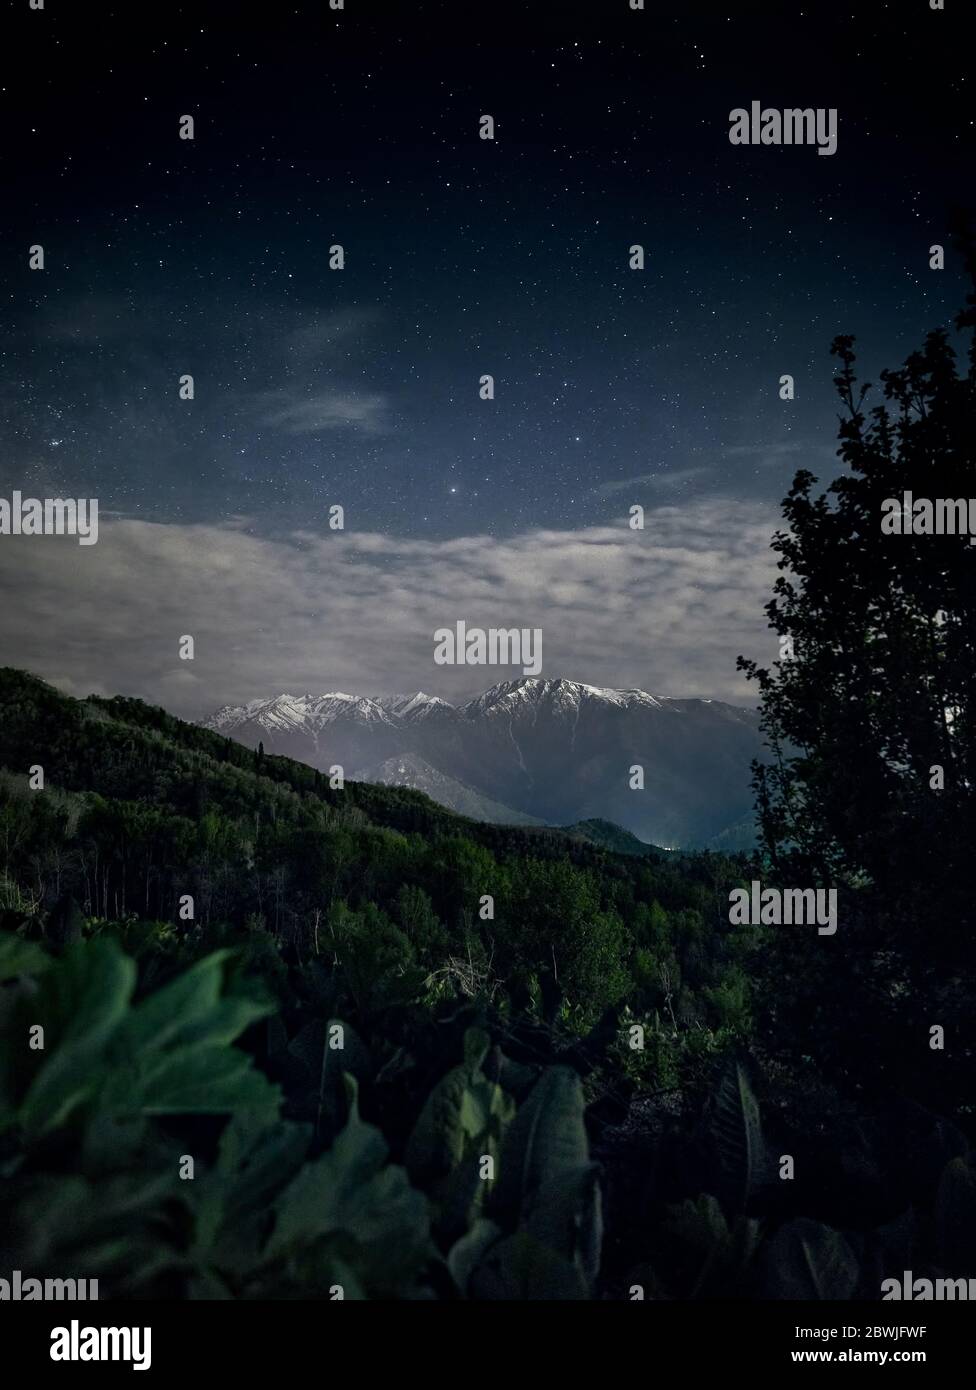 Splendido scenario di montagne bianche e lussureggiante vegetazione in primo piano contro il cielo notturno pieno di stelle. Astrofotografia e esposizione lunga. Foto Stock